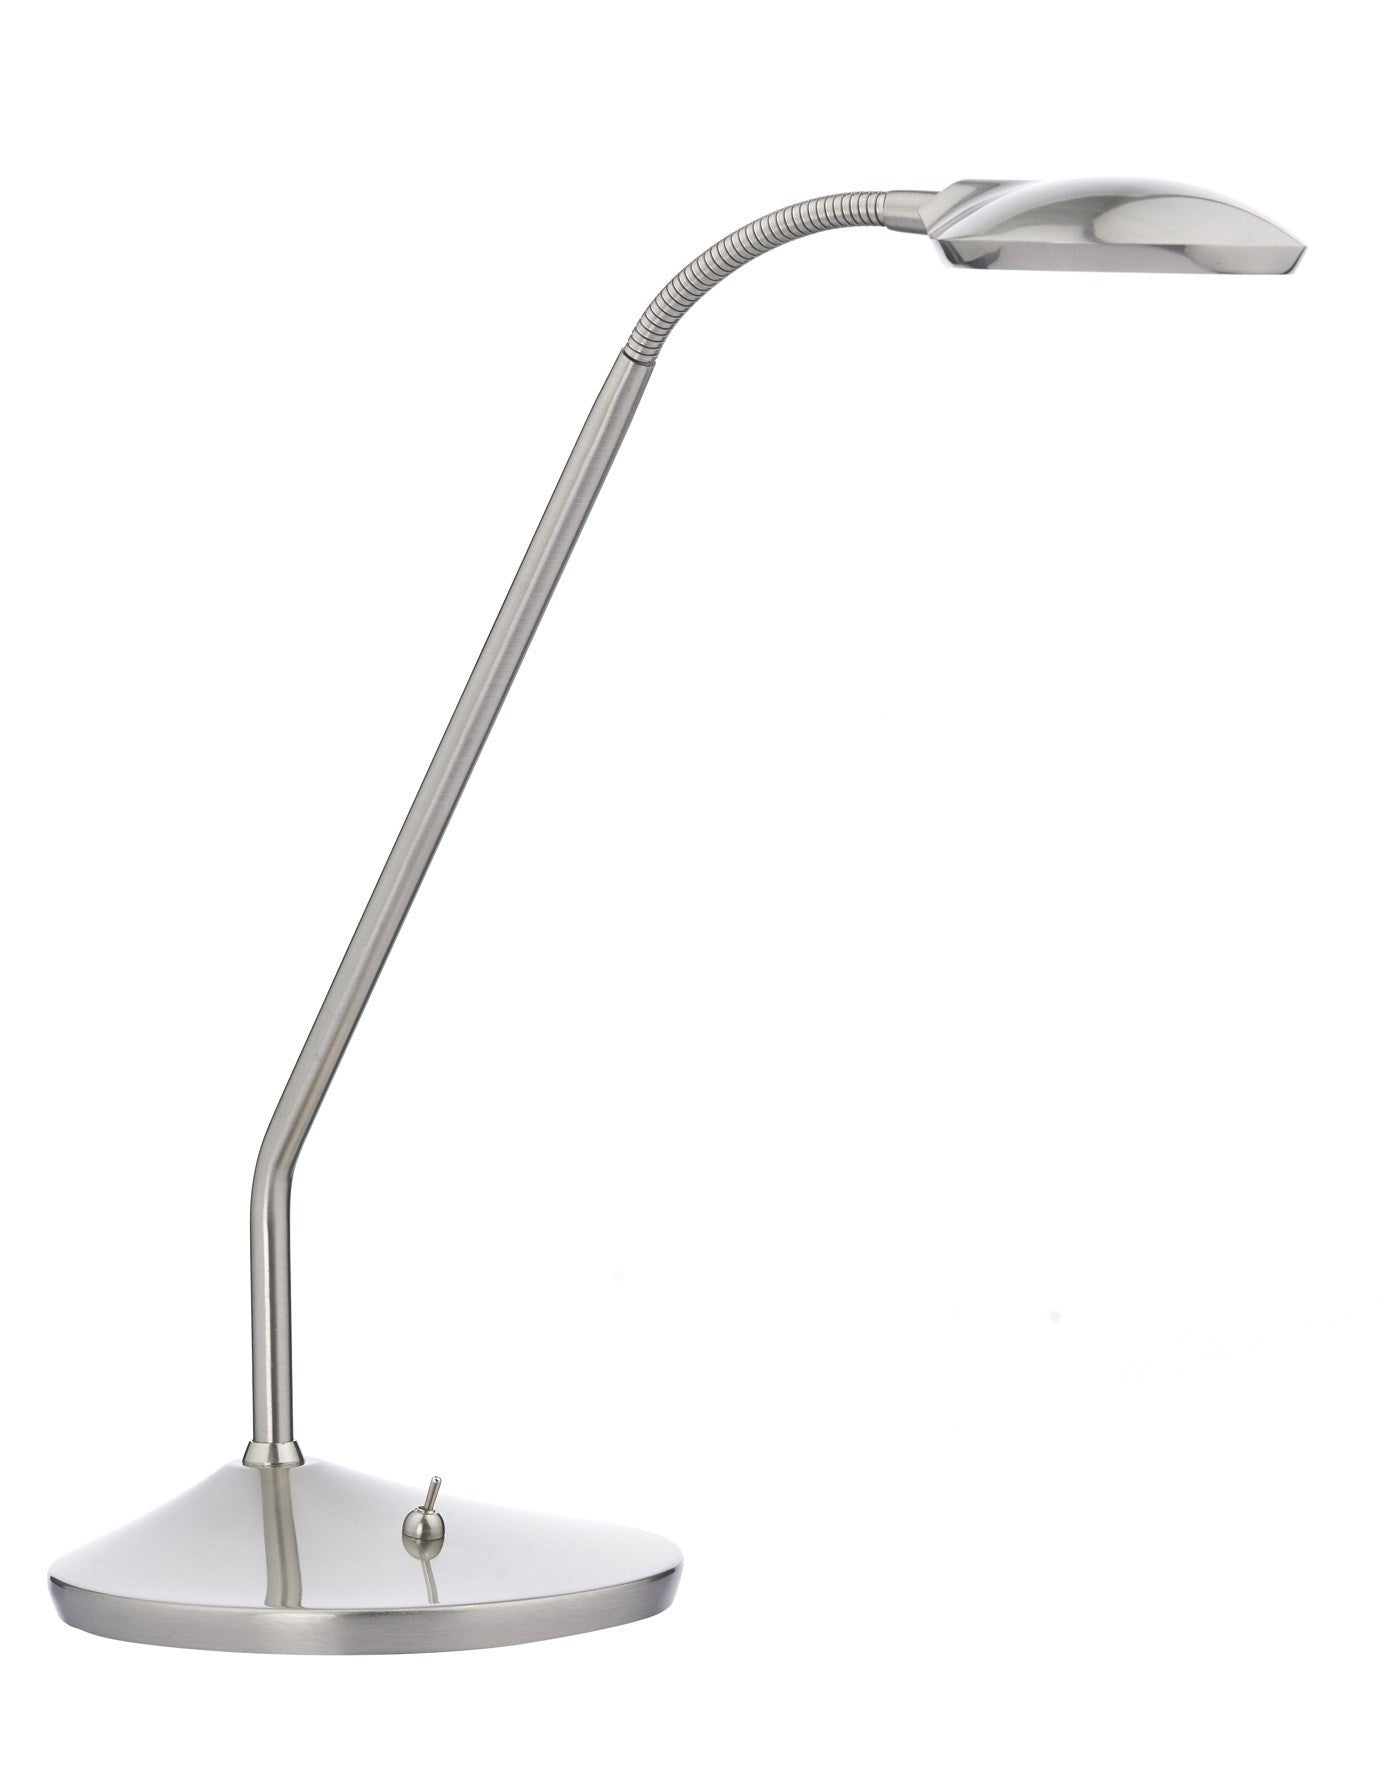 Wellington LED Desk Lamp in Satin Chrome - London Lighting - 1